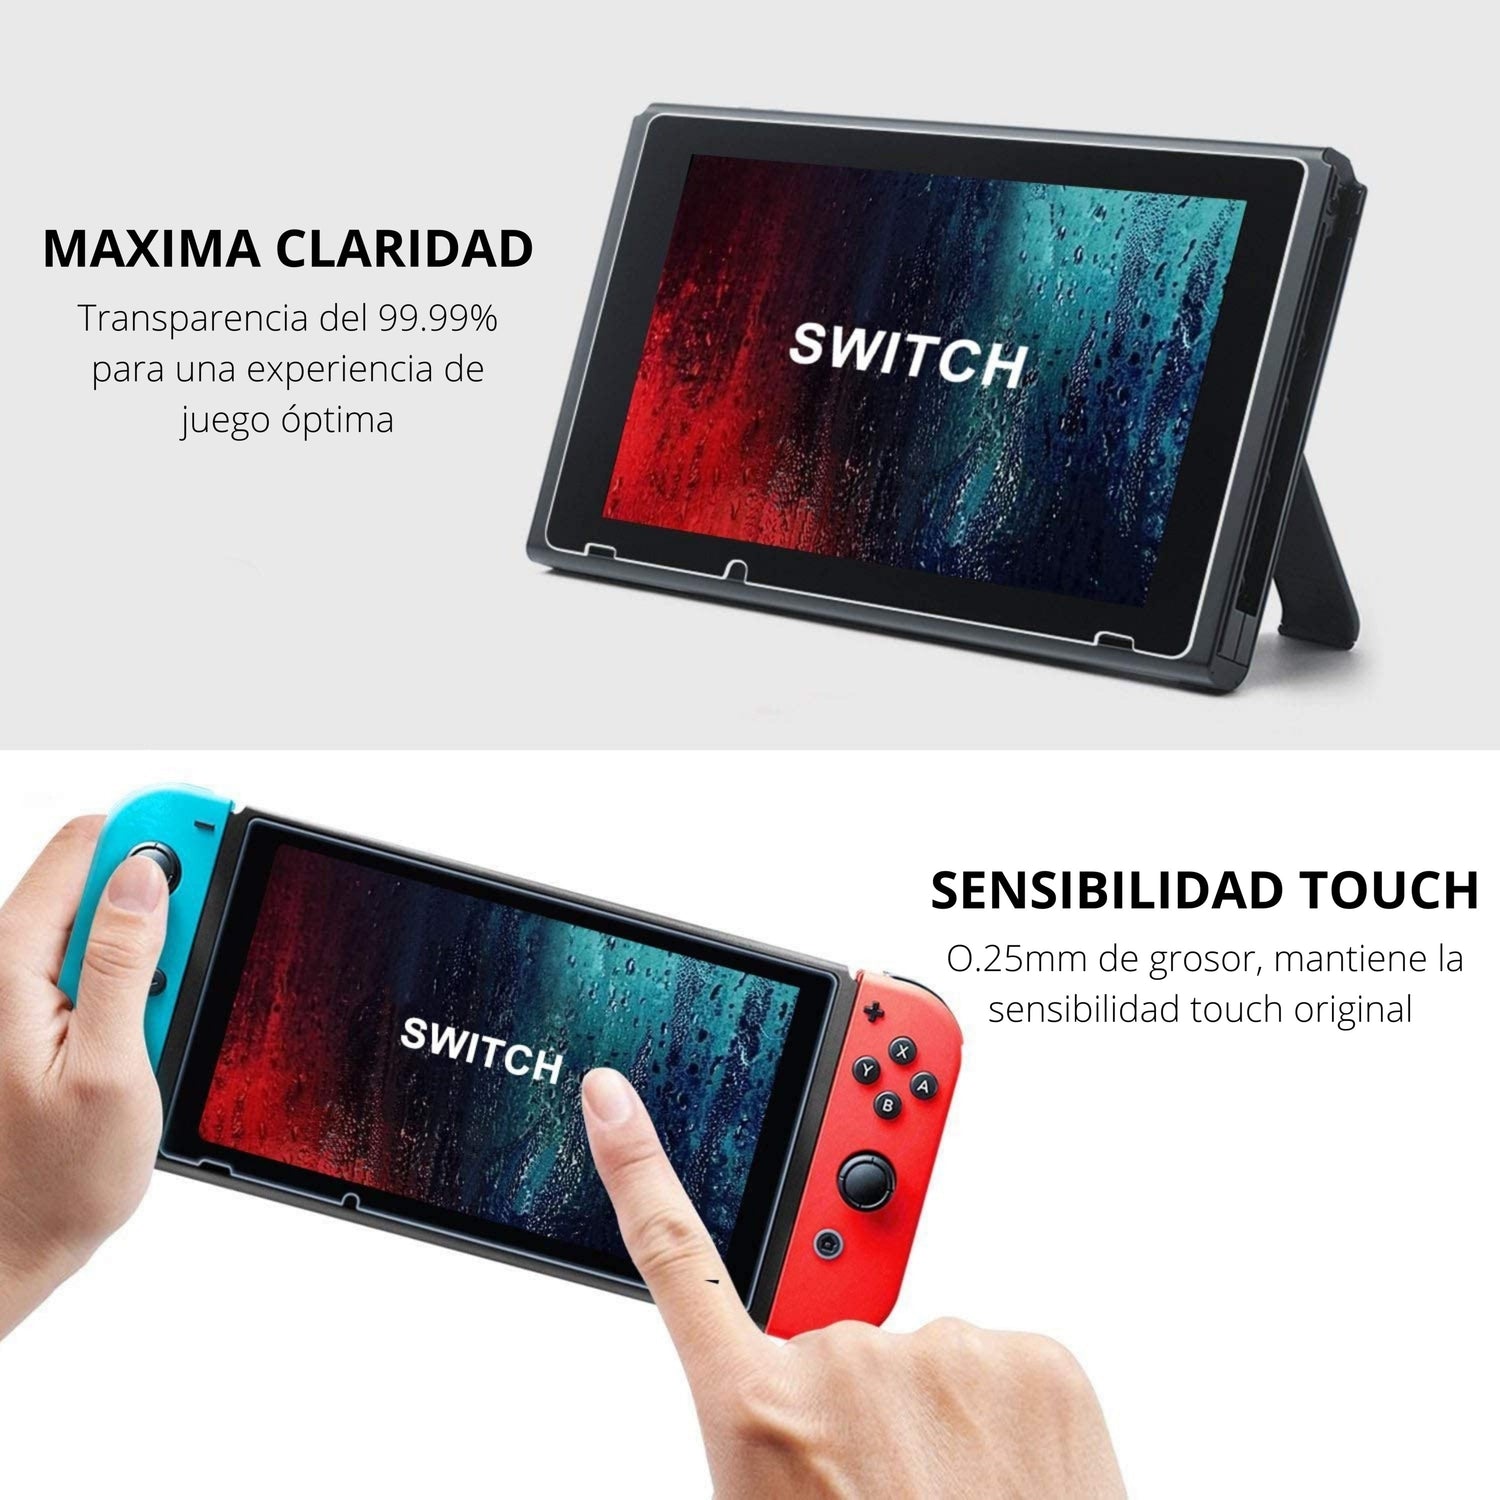 Estuche Retro Kit de Accesorios para Nintendo Switch 2021 - TiendaGeek.com